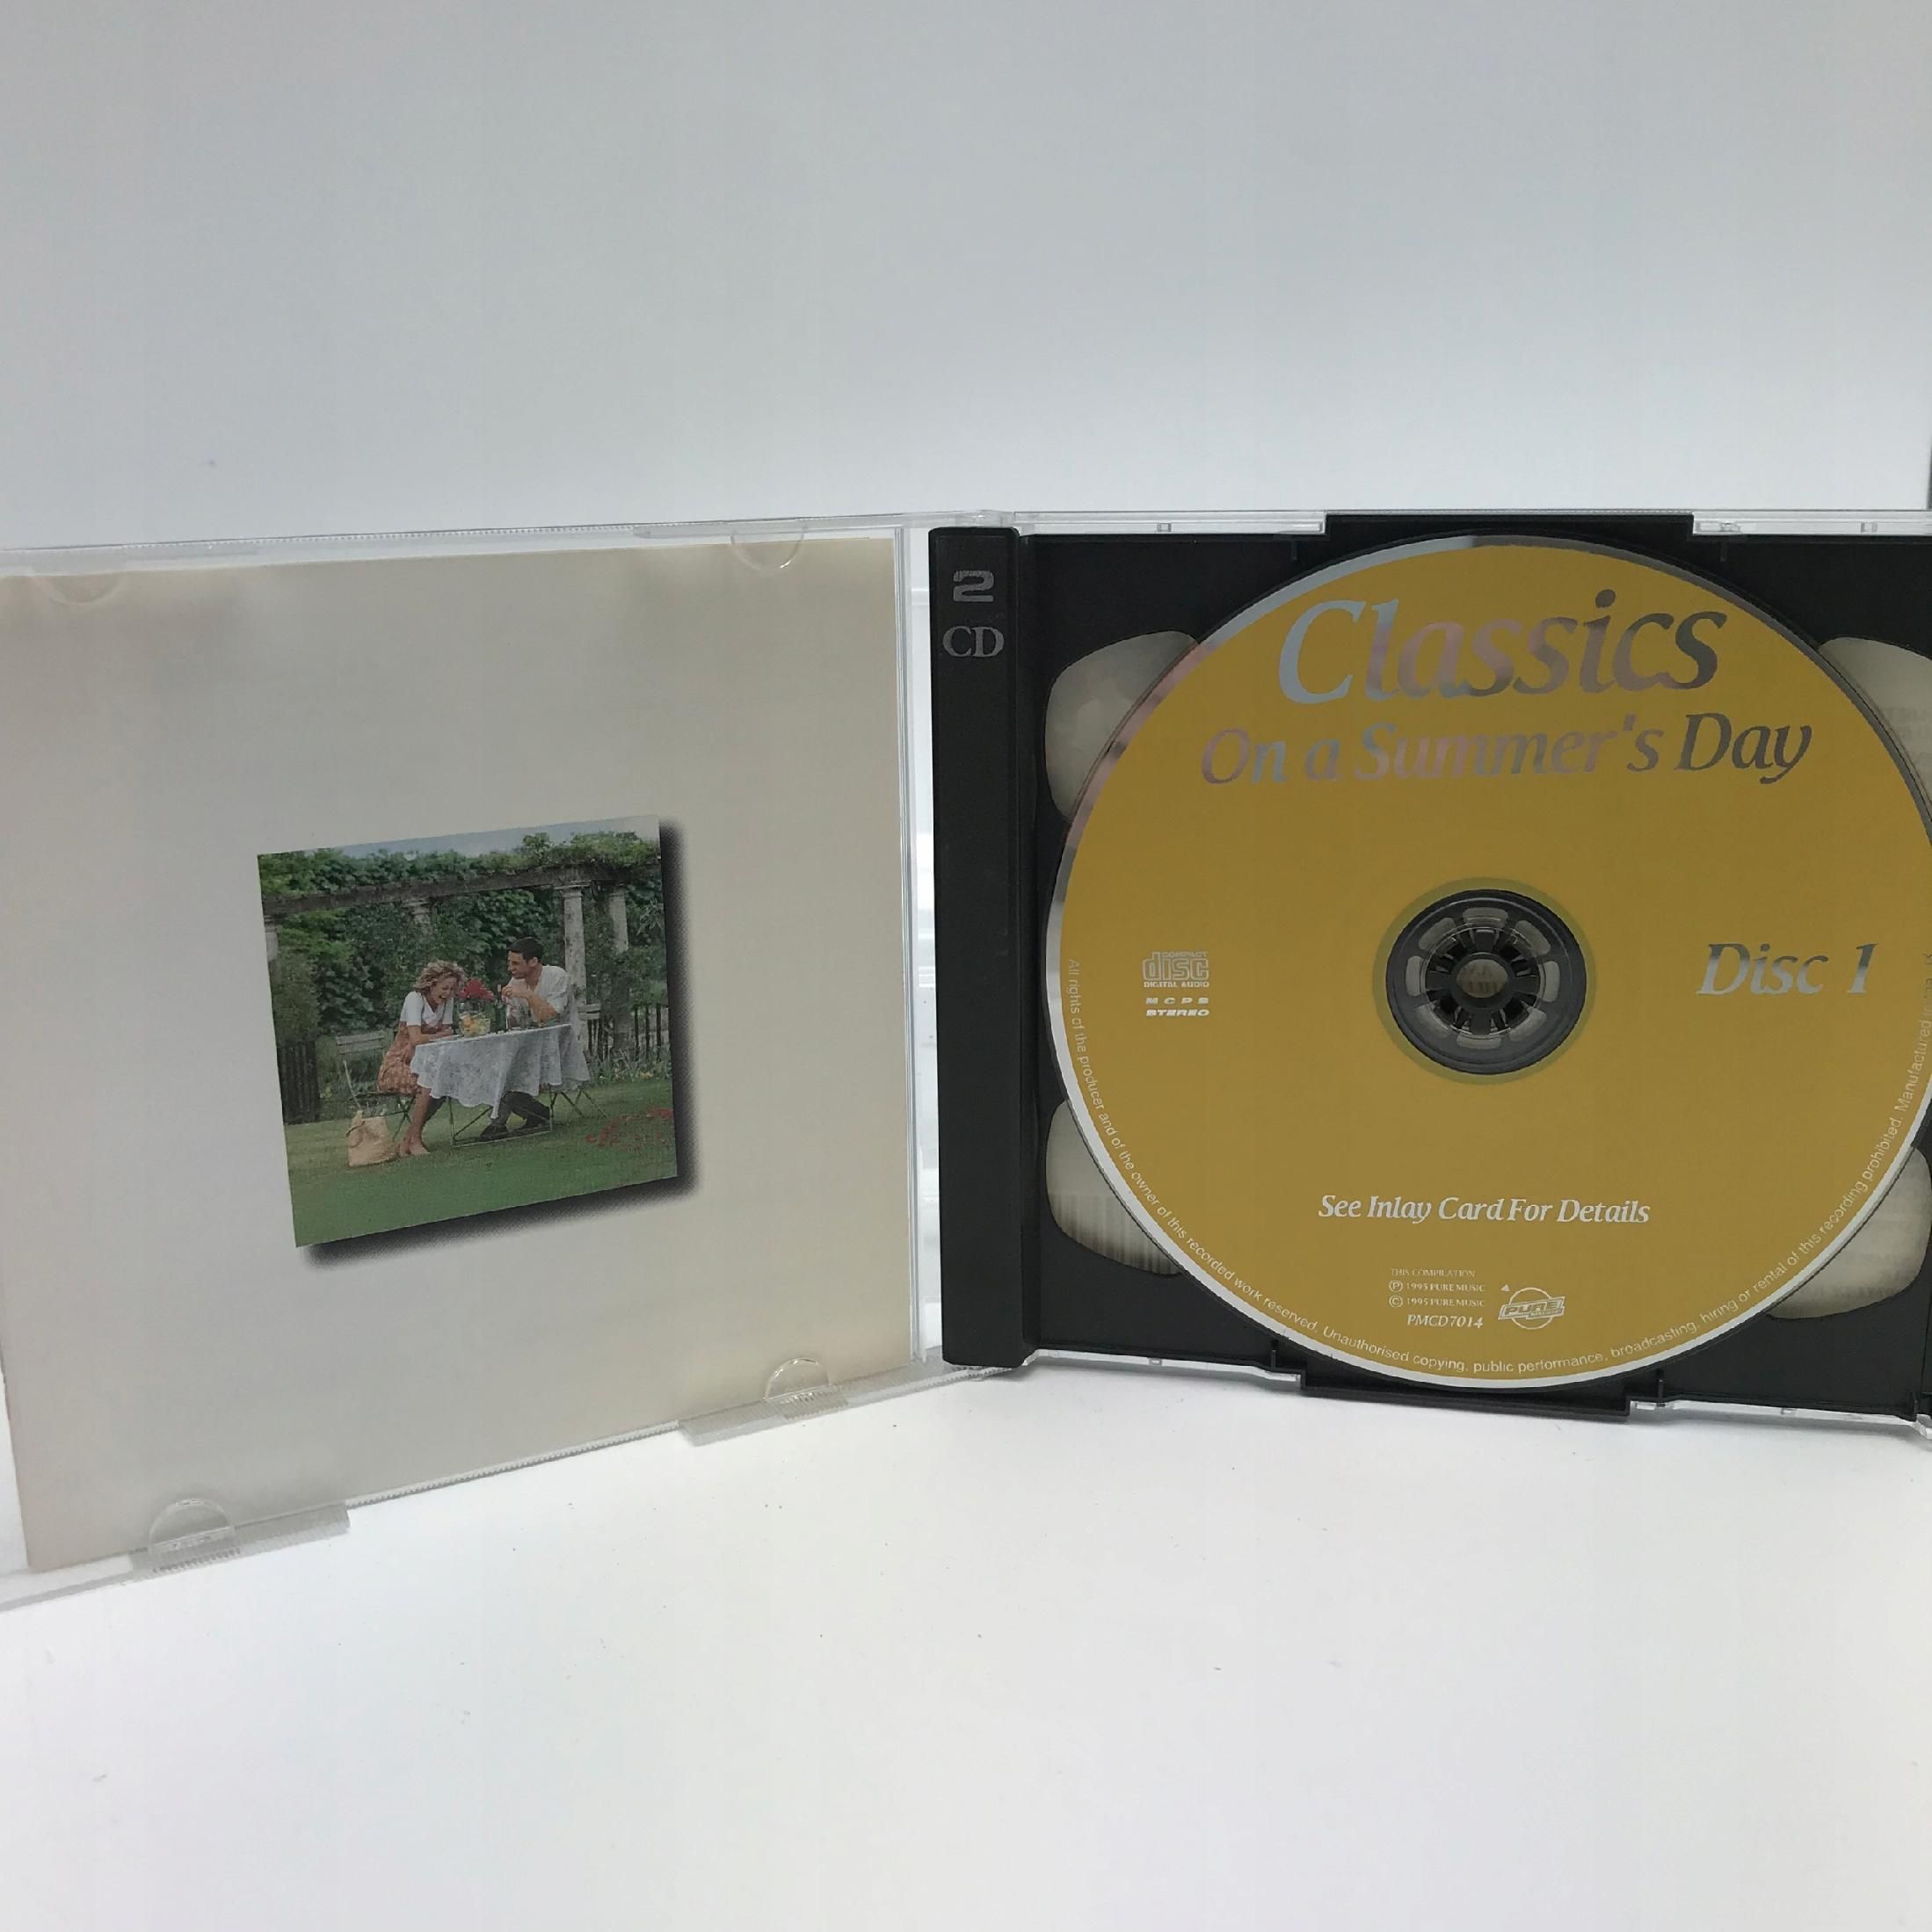 Cd - Various - Classics On A Summer's Day Składanka 1995